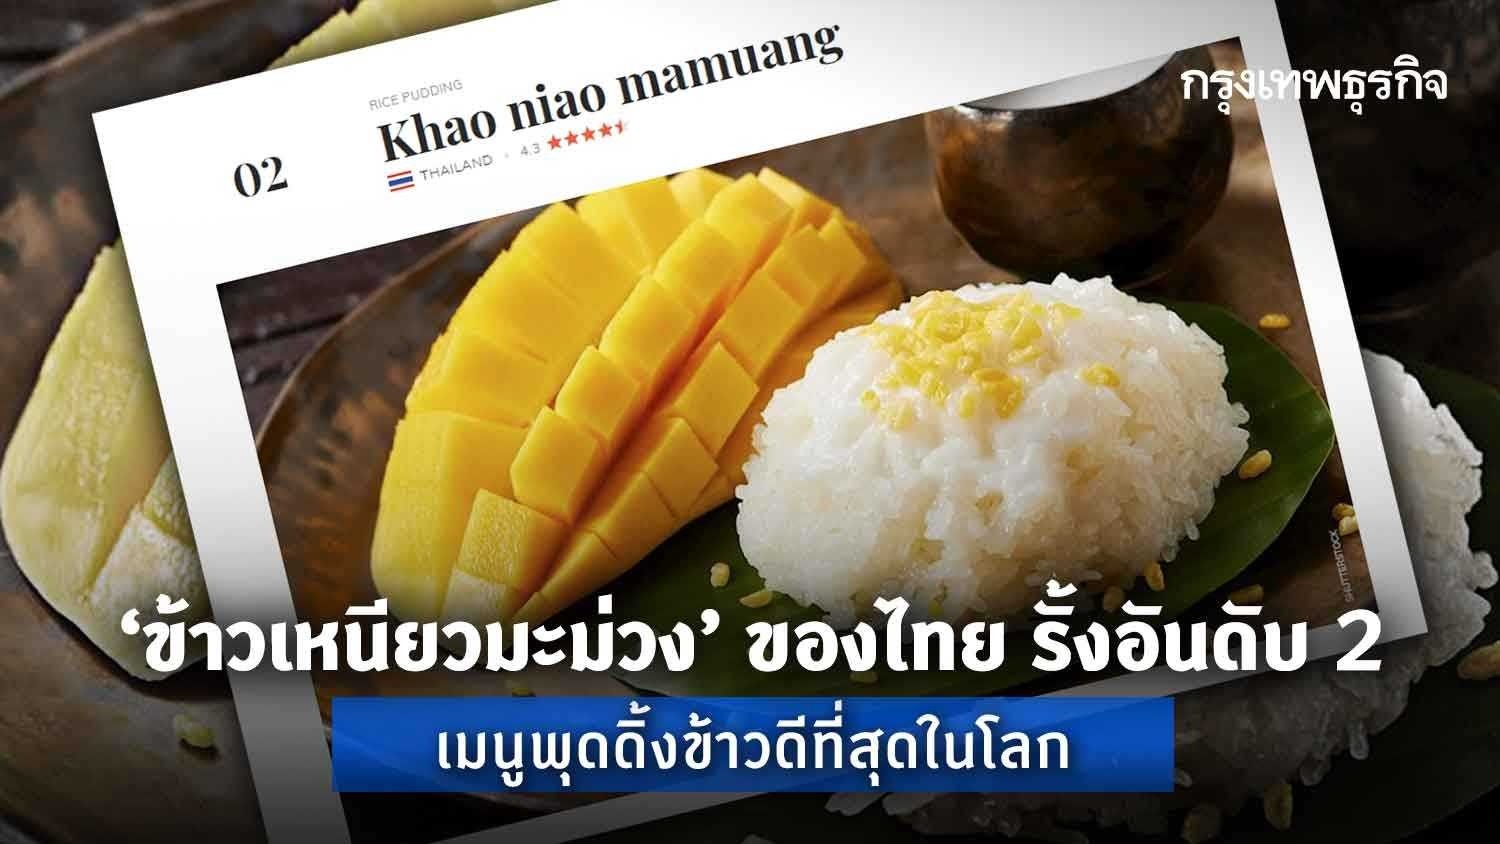 'ข้าวเหนียวมะม่วง' ของไทย รั้งอันดับ 2 เมนูพุดดิ้งข้าวดีที่สุดในโลก